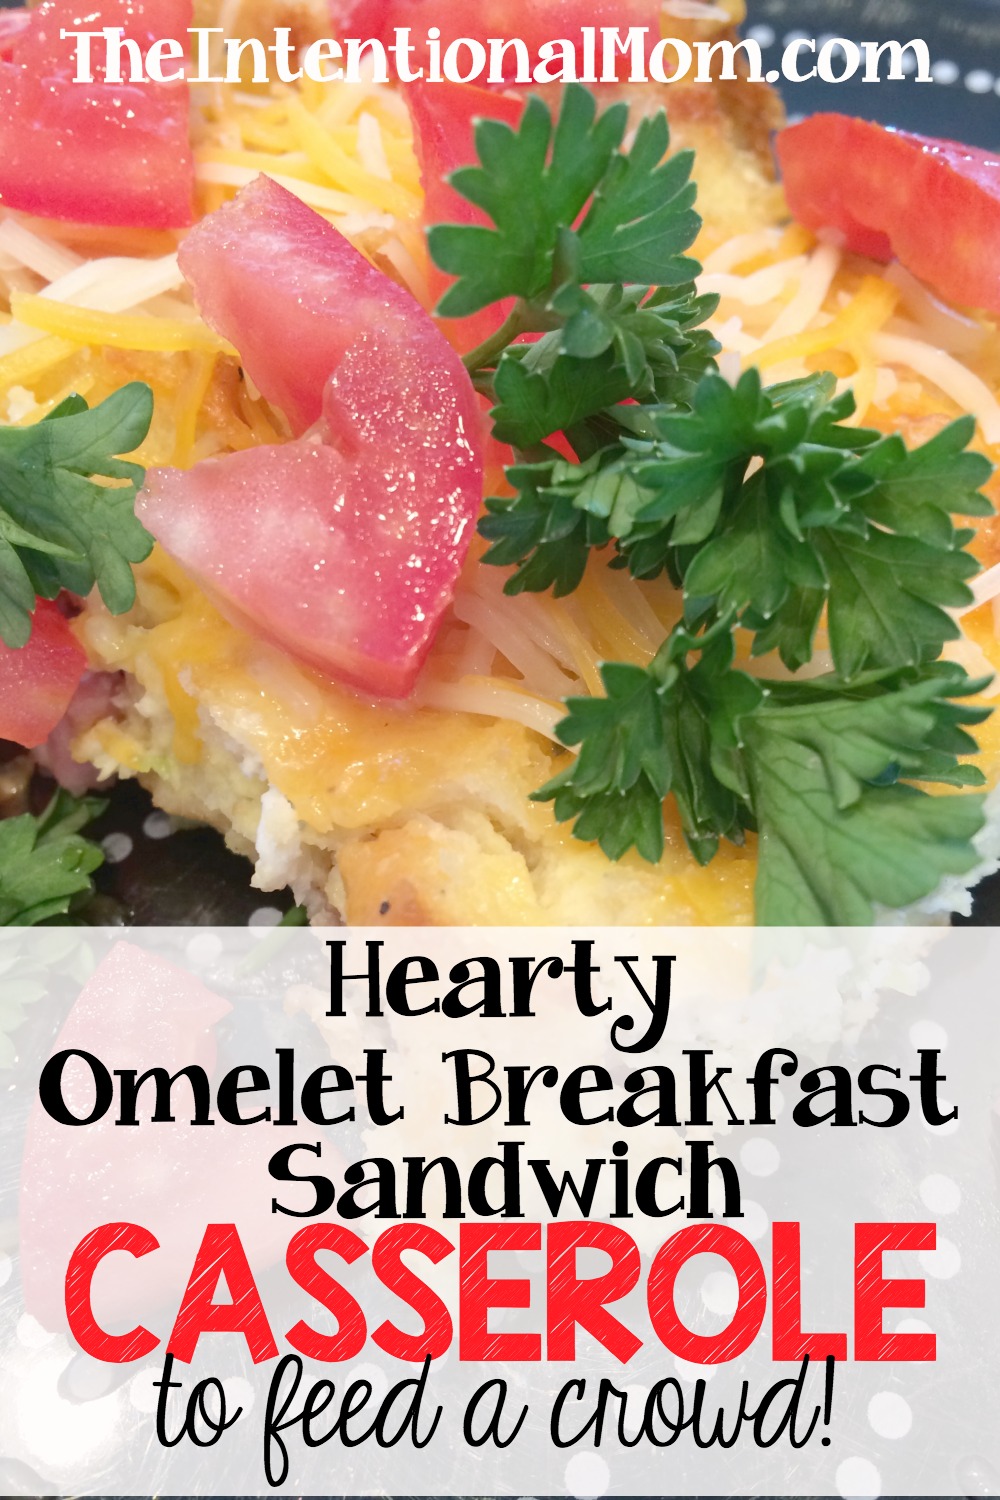 Hearty Omelet Breakfast Sandwich Casserole to Feed a Crowd!